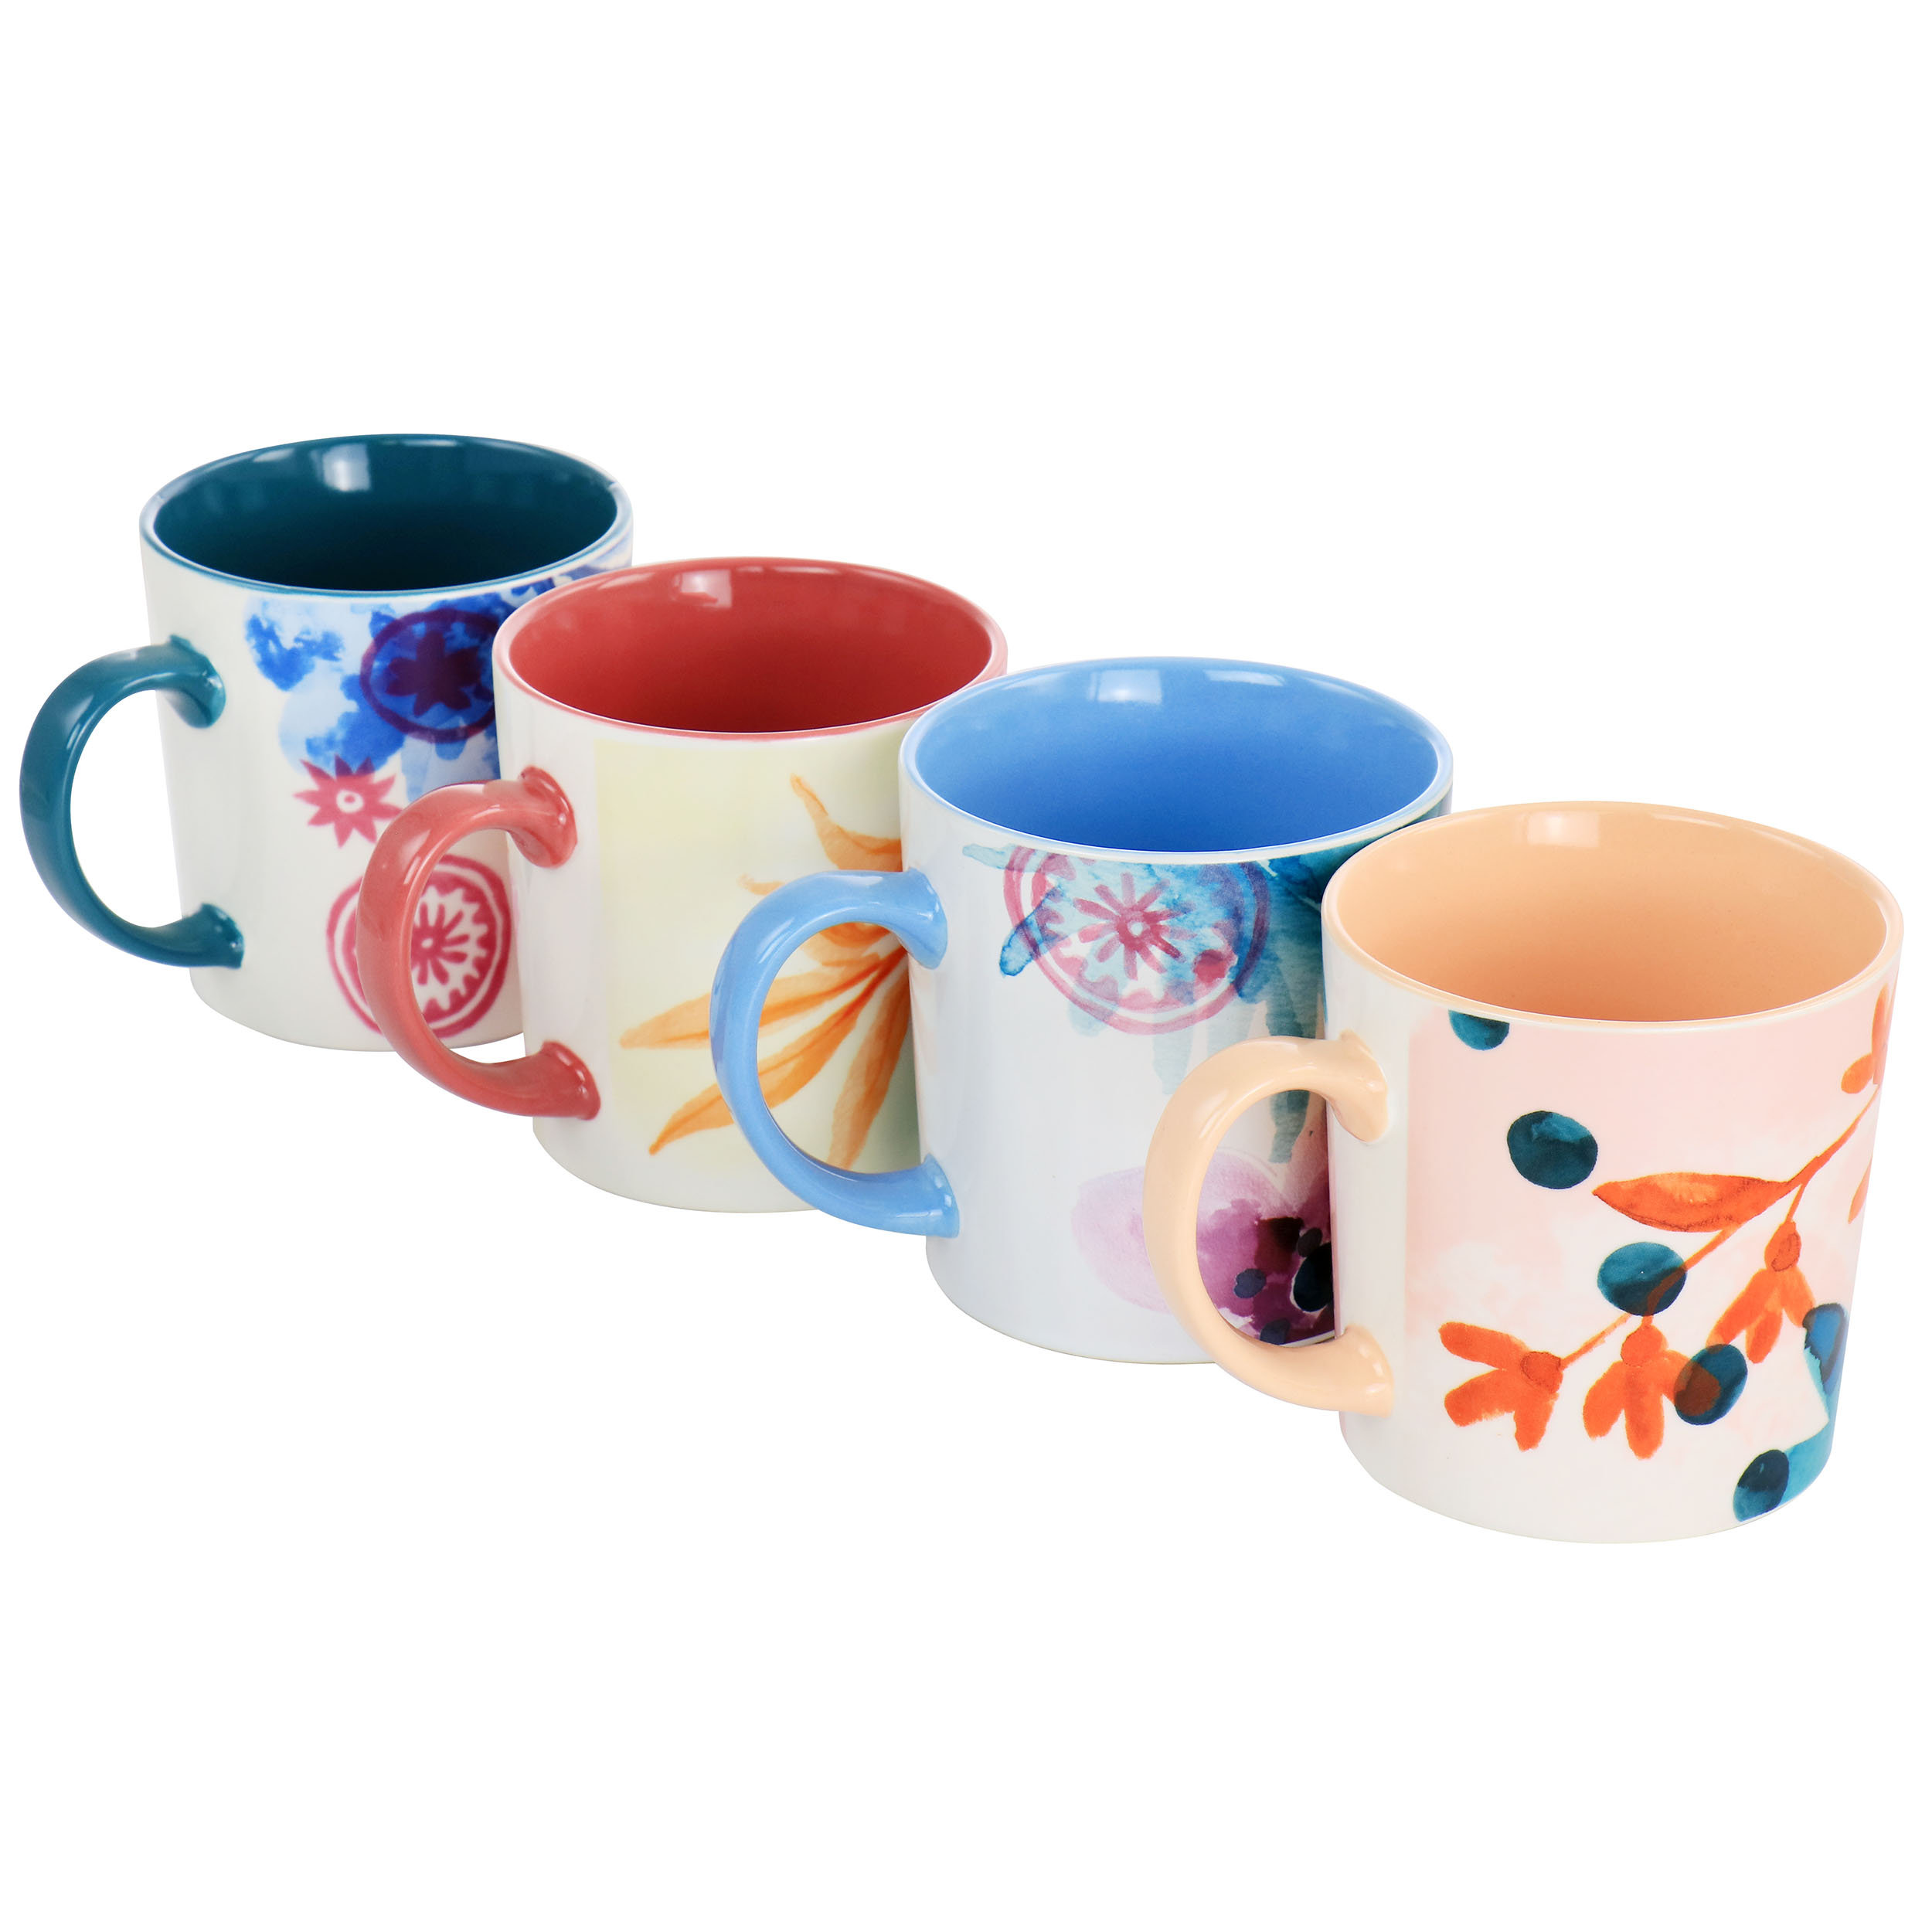 https://assets.wfcdn.com/im/18865518/compr-r85/2054/205405000/spice-by-tia-mowry-goji-blossom-fine-ceramic-4-piece-17oz-mug-set-in-multi-color.jpg